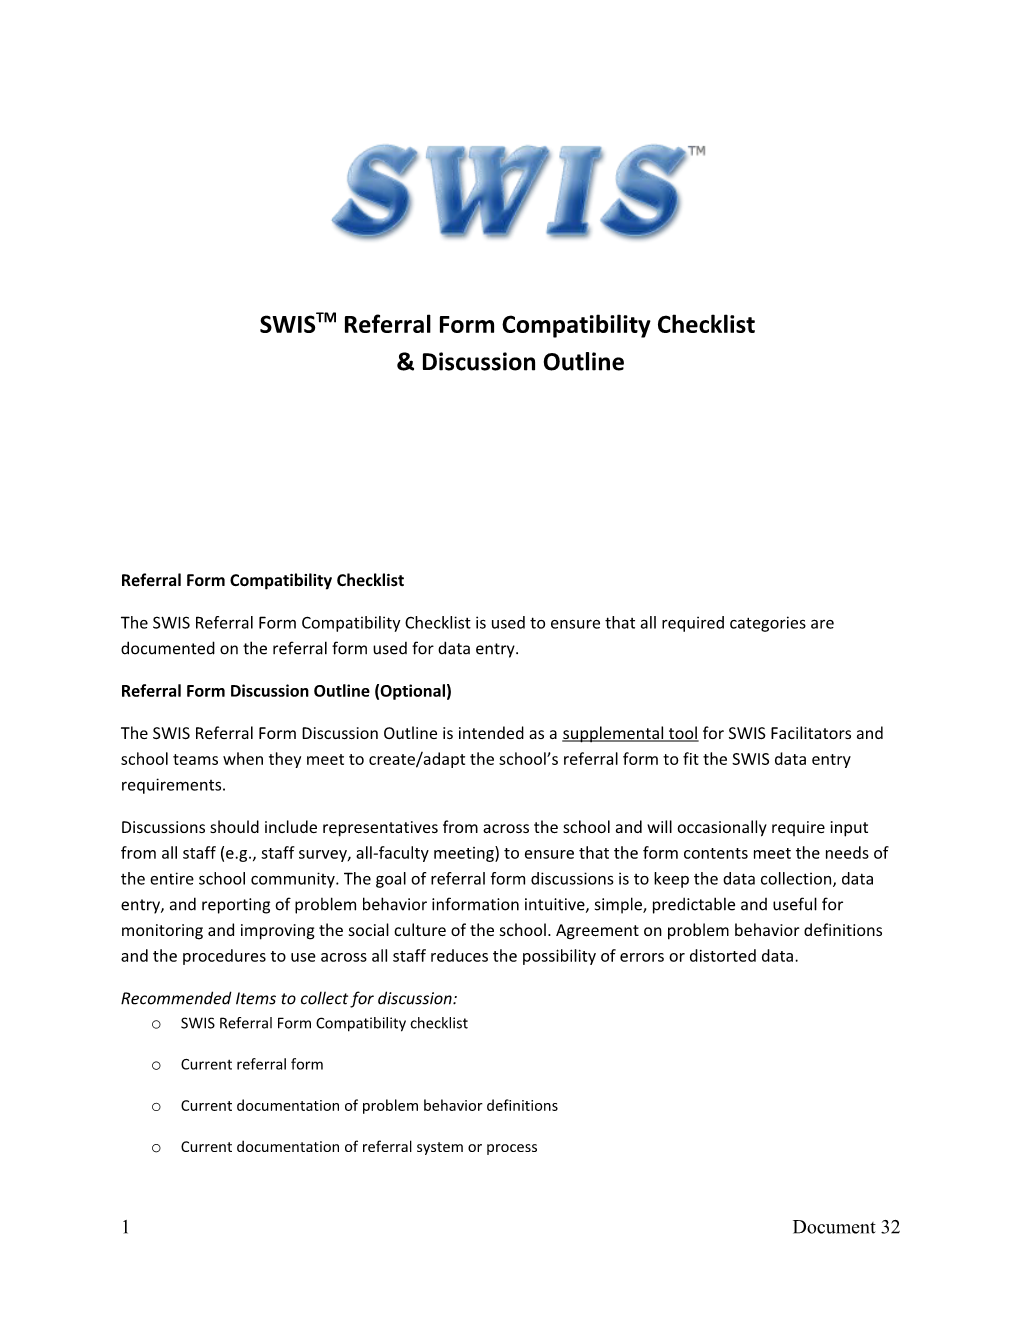 Referral Form Compatibility Checklist